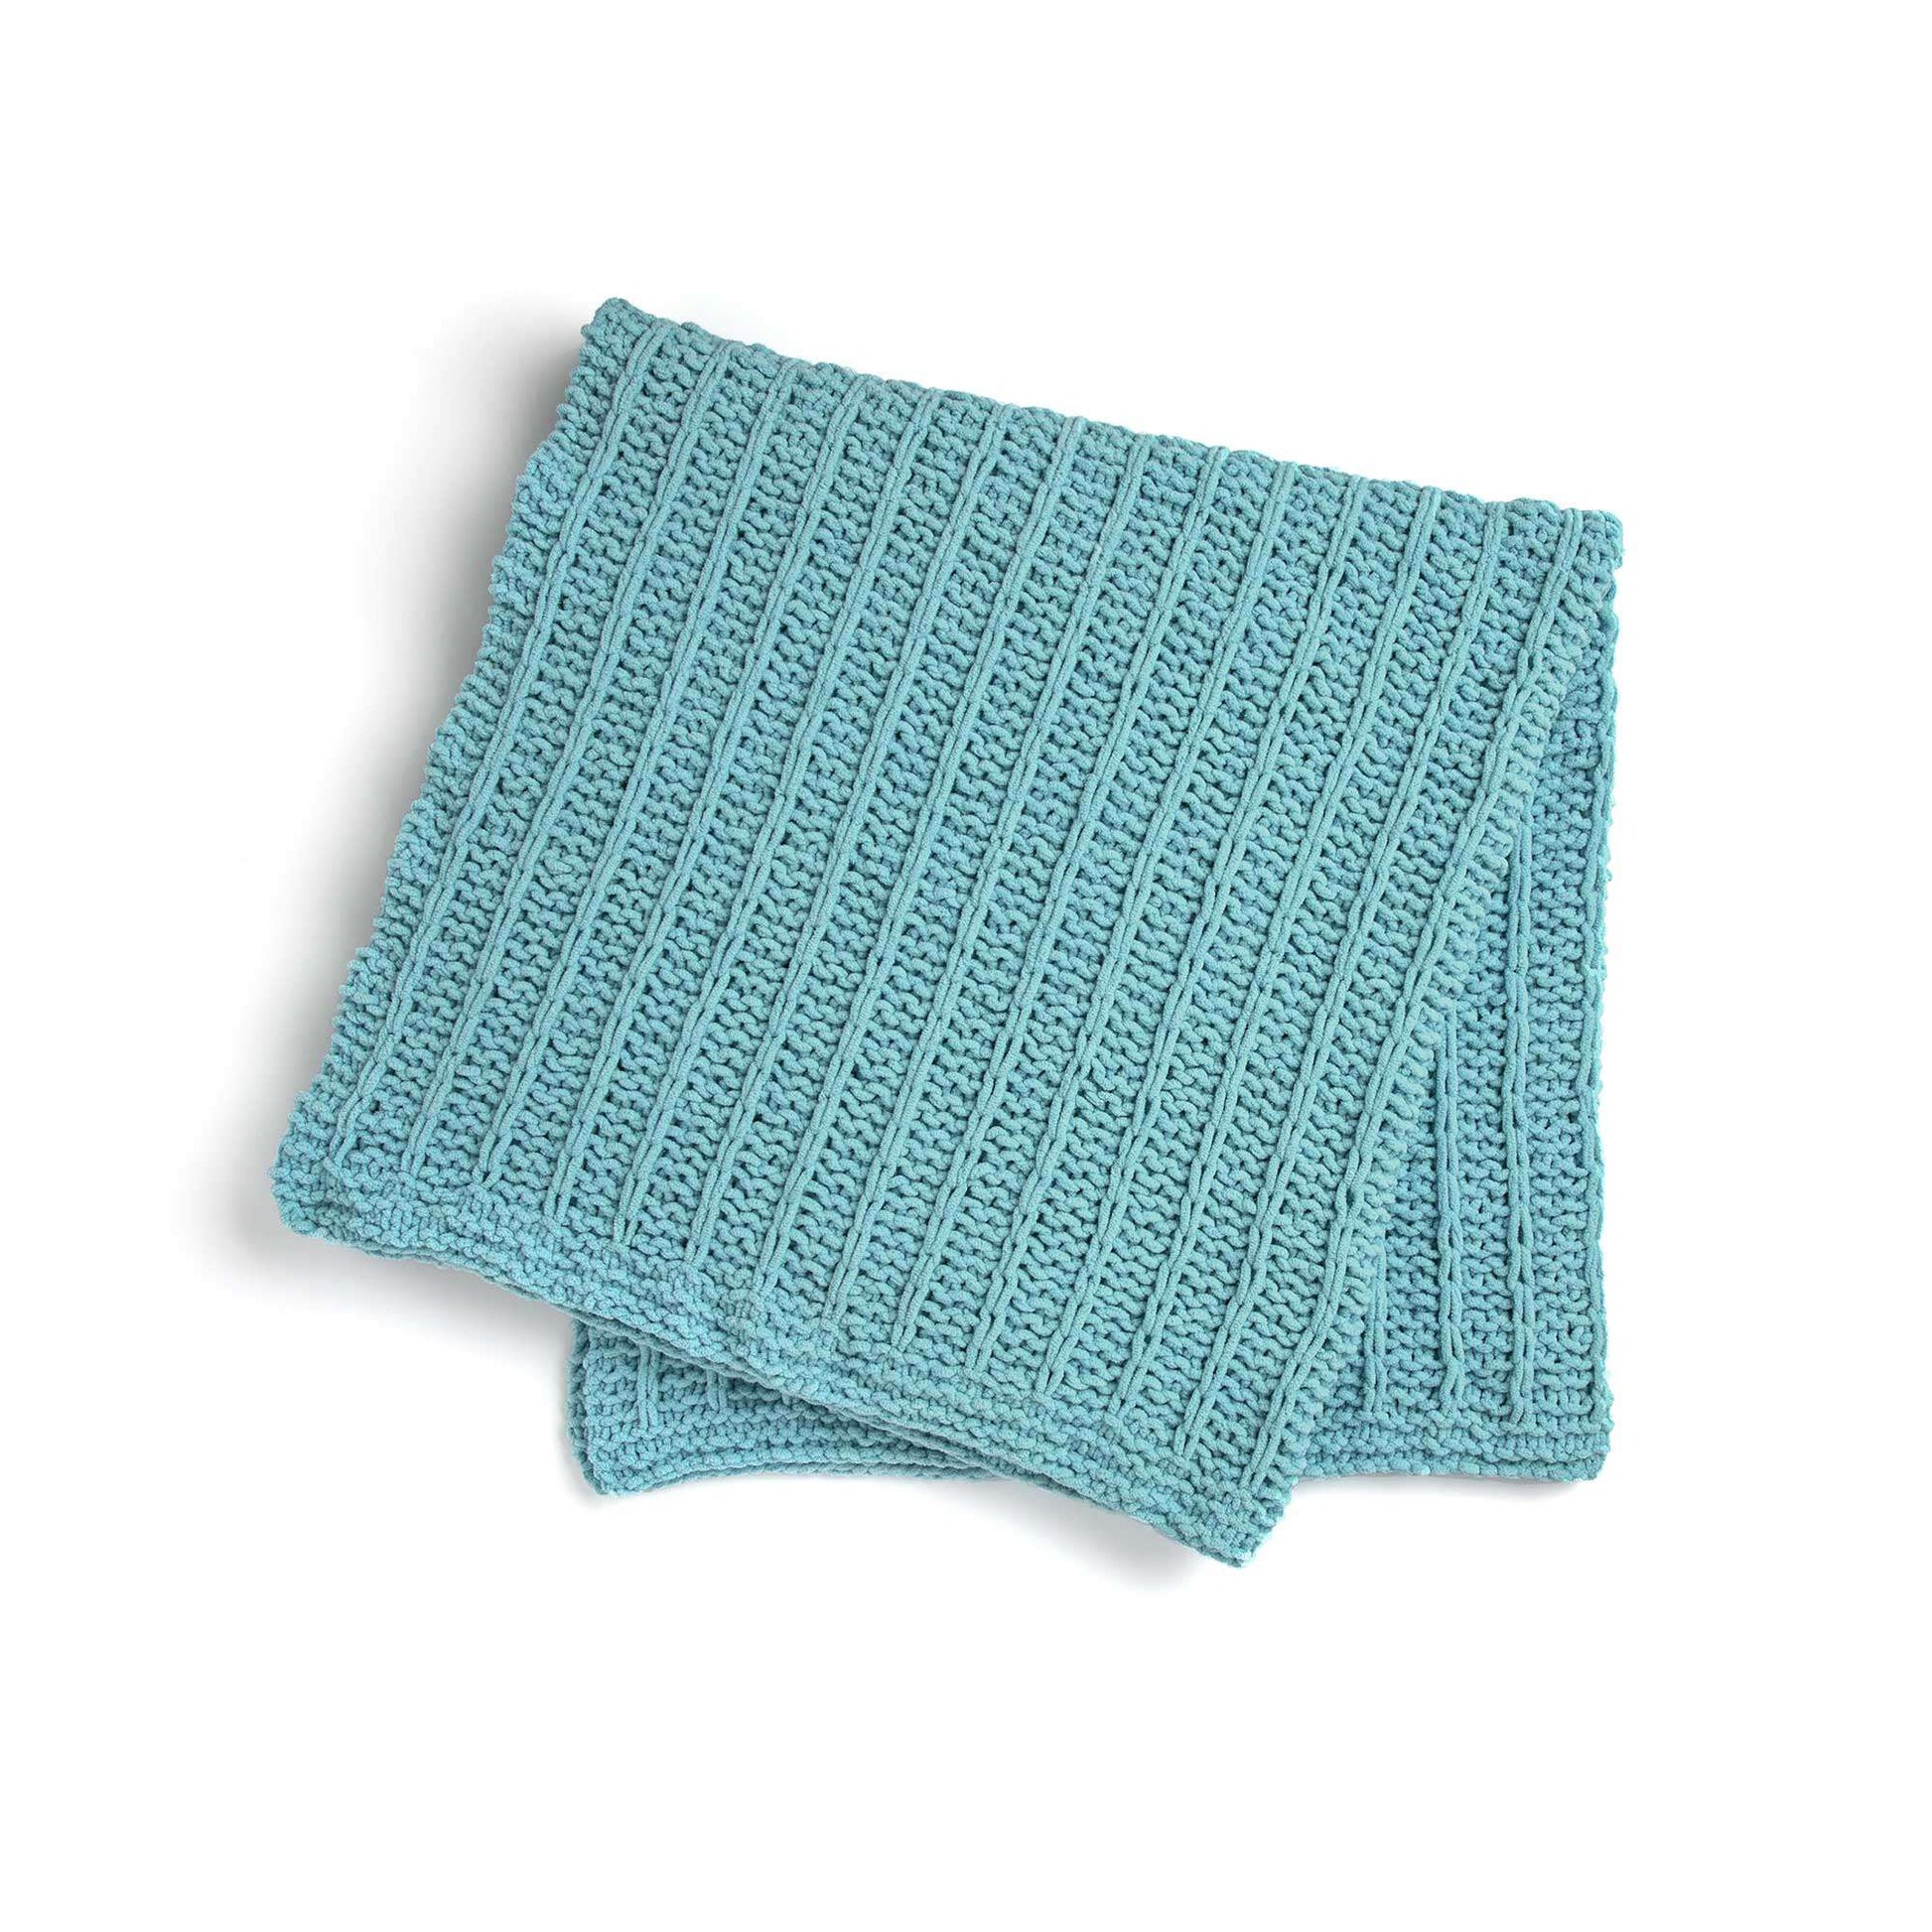 Free Bernat Slip Stitch Knit Blanket Sparkle Pattern